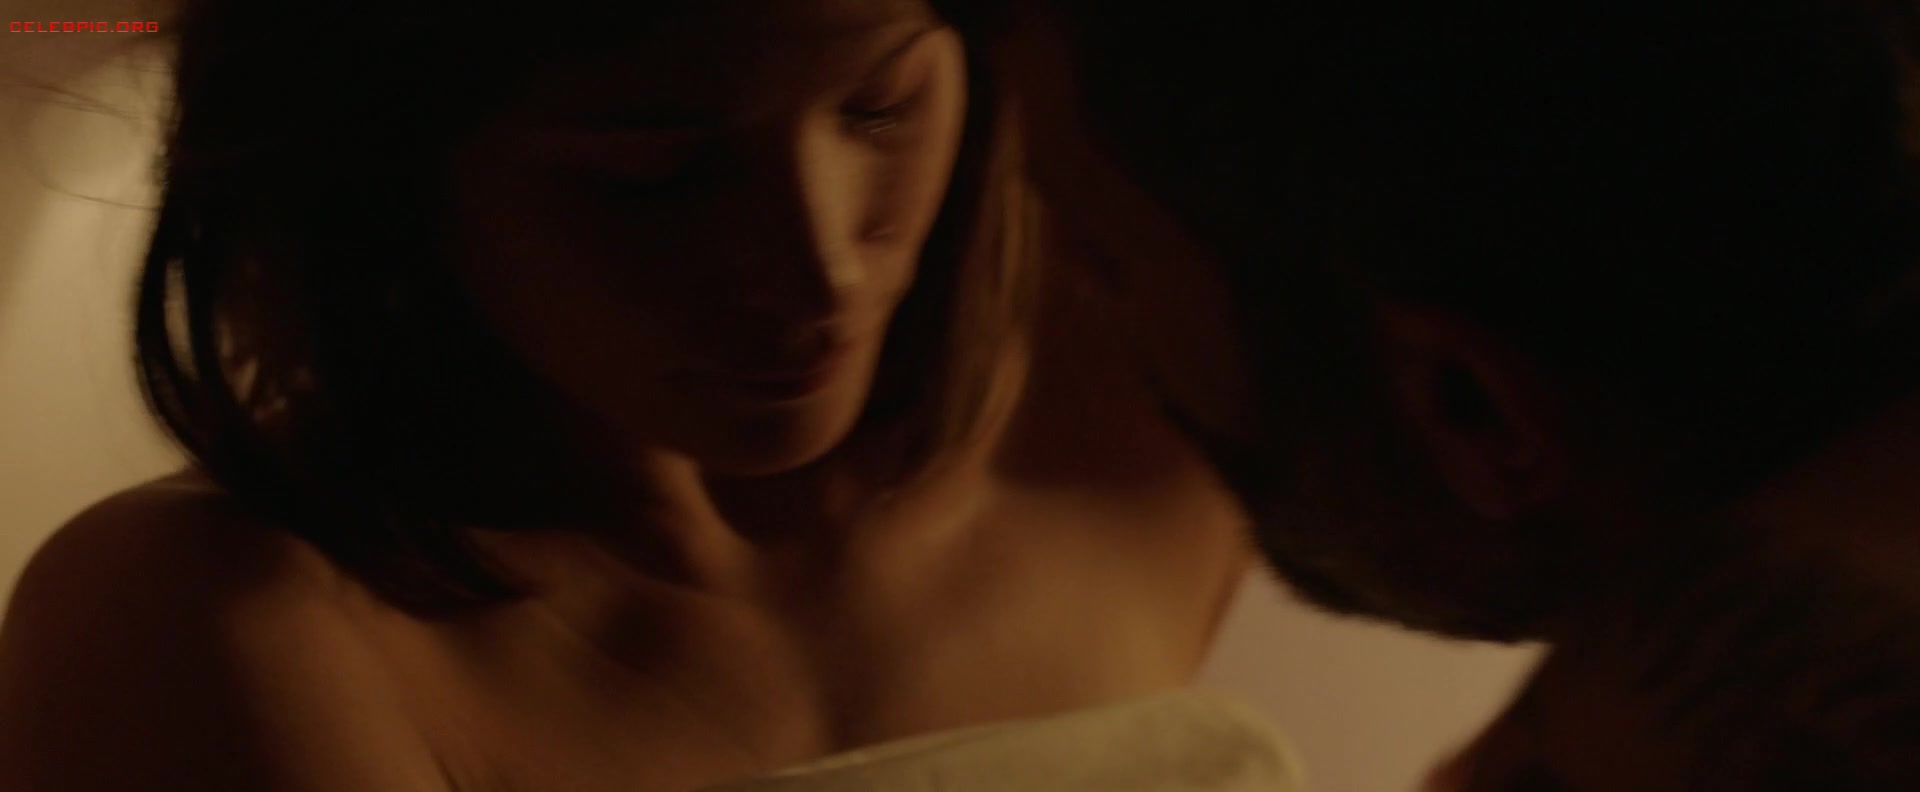 Gemma Arterton - The Escape 1080p (1) 1394.jpg